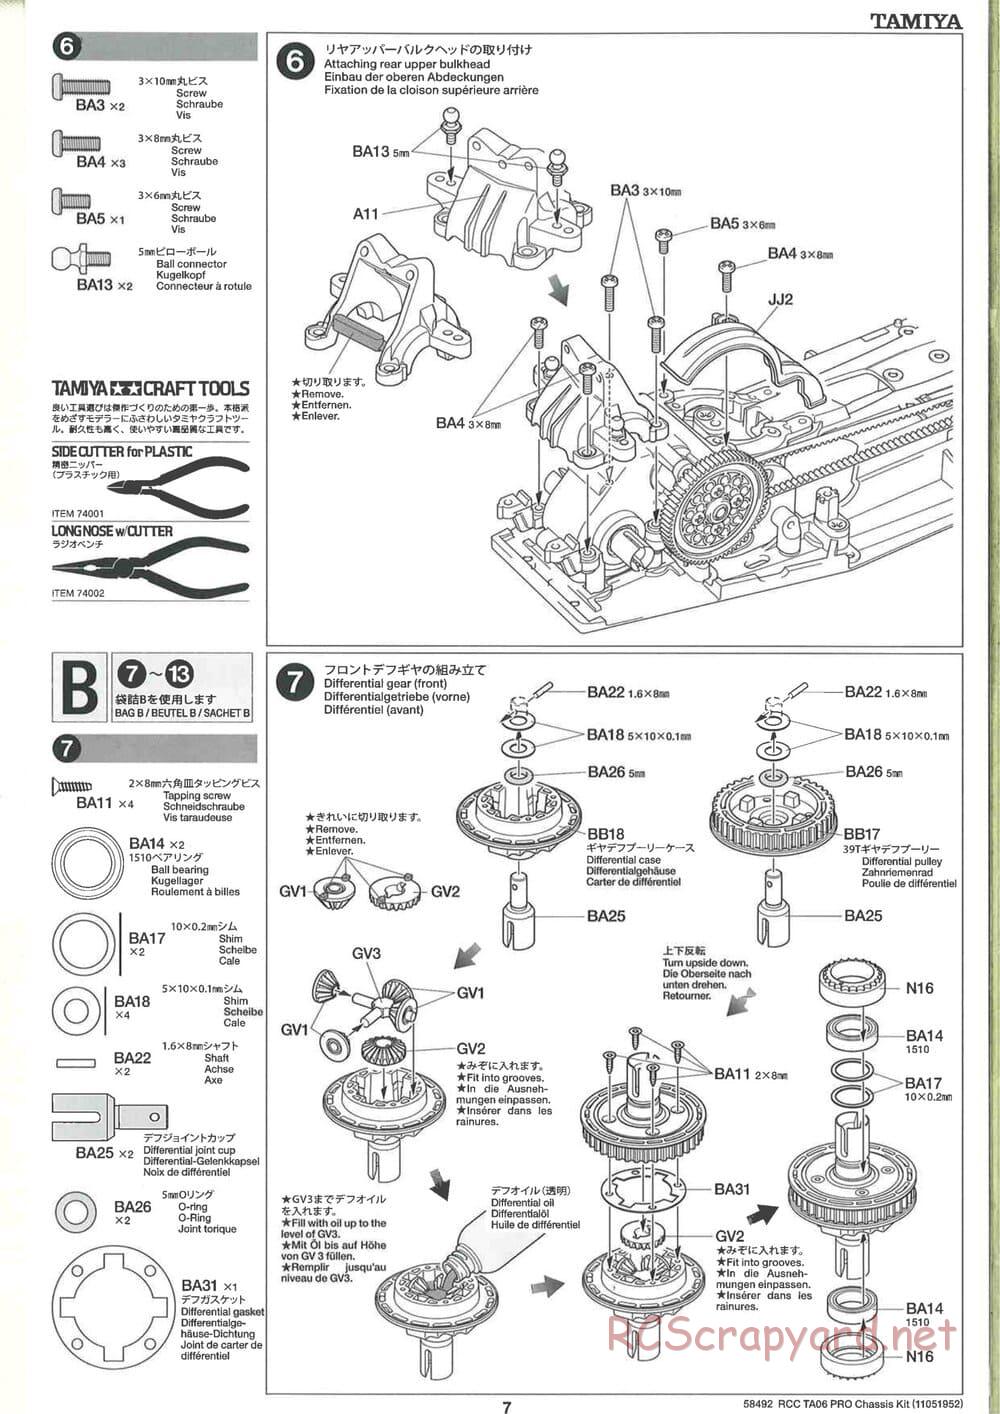 Tamiya - TA06 Pro Chassis - Manual - Page 7